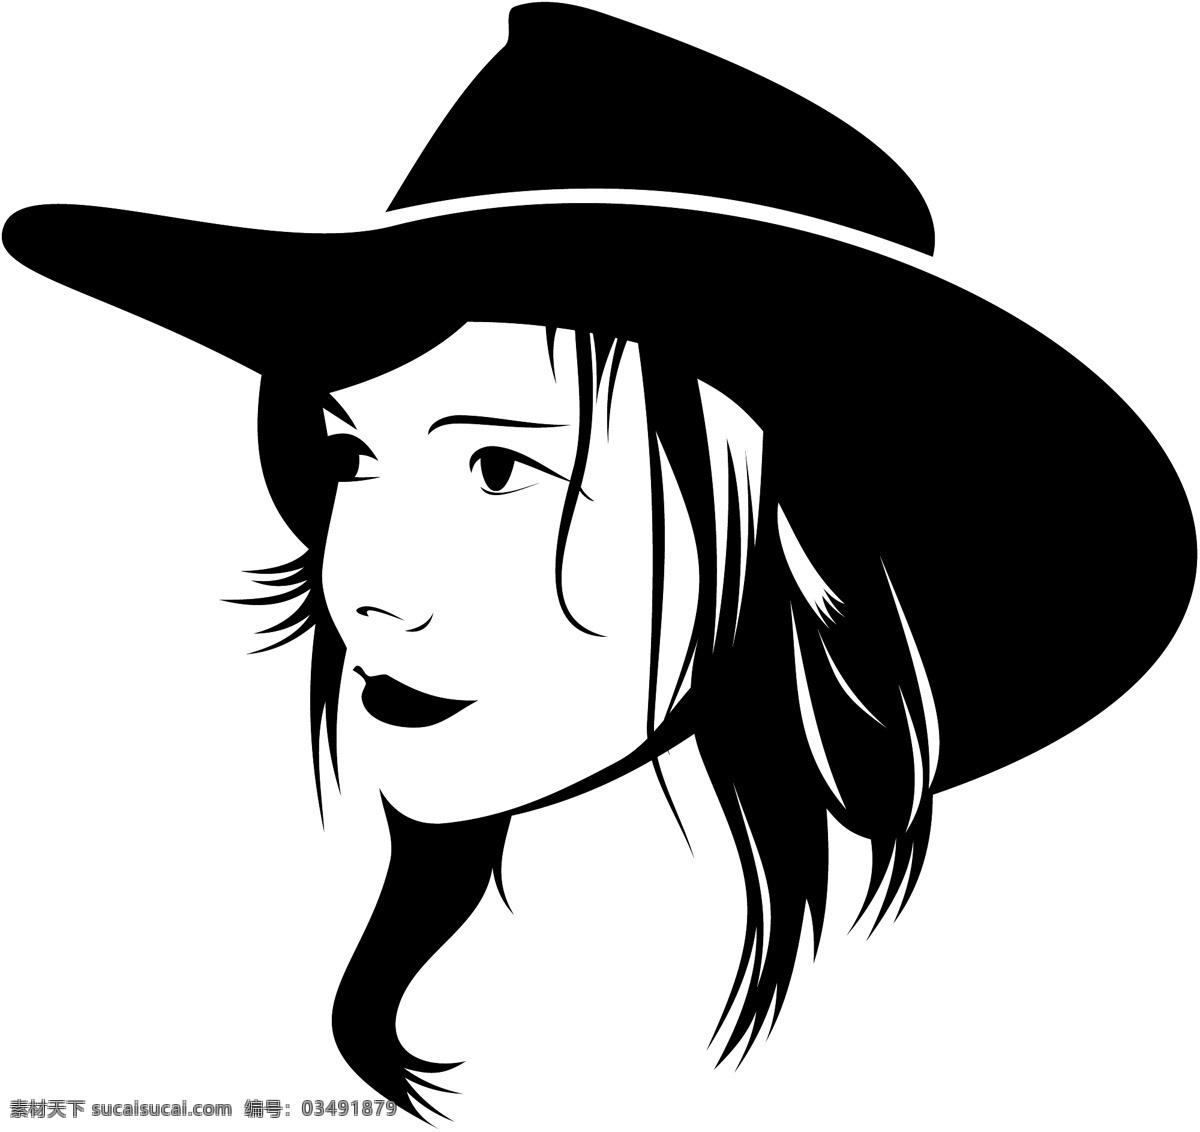 美女 人物 牛仔 帽子 剪影 手绘 黑白 素描 速写 矢量女人 妇女女性 矢量人物 矢量